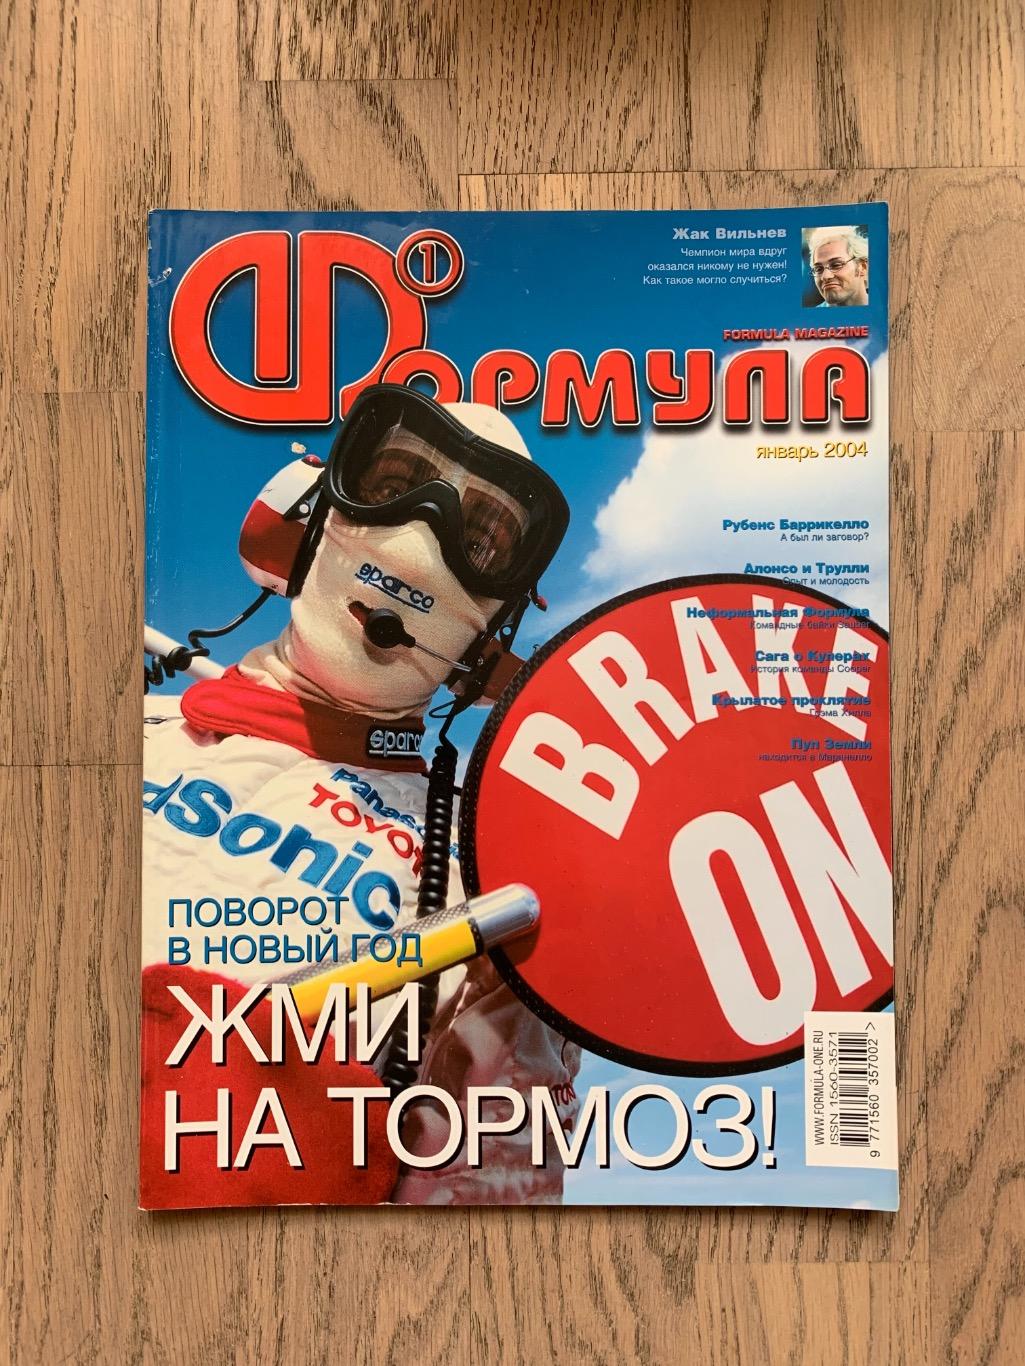 Журнал Формула 1 (Formula Magazine) / январь 2004